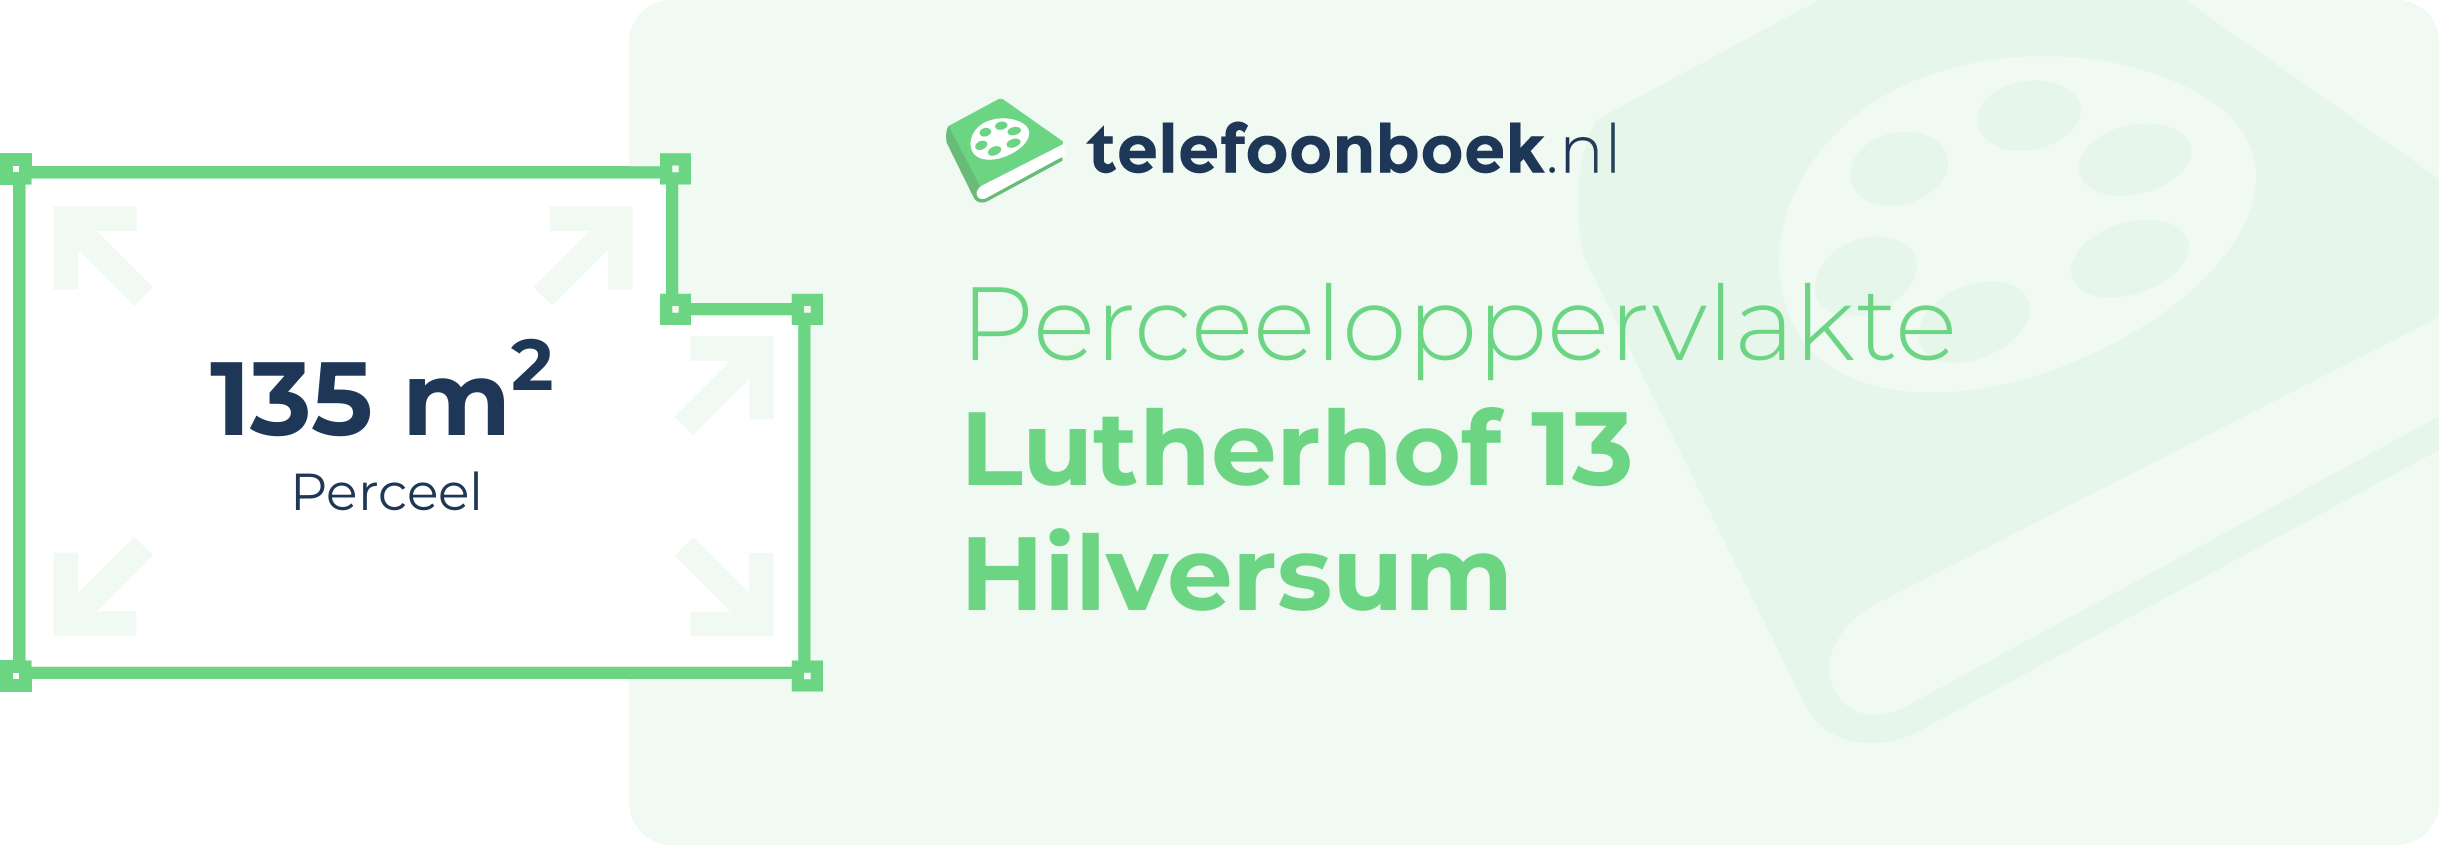 Perceeloppervlakte Lutherhof 13 Hilversum